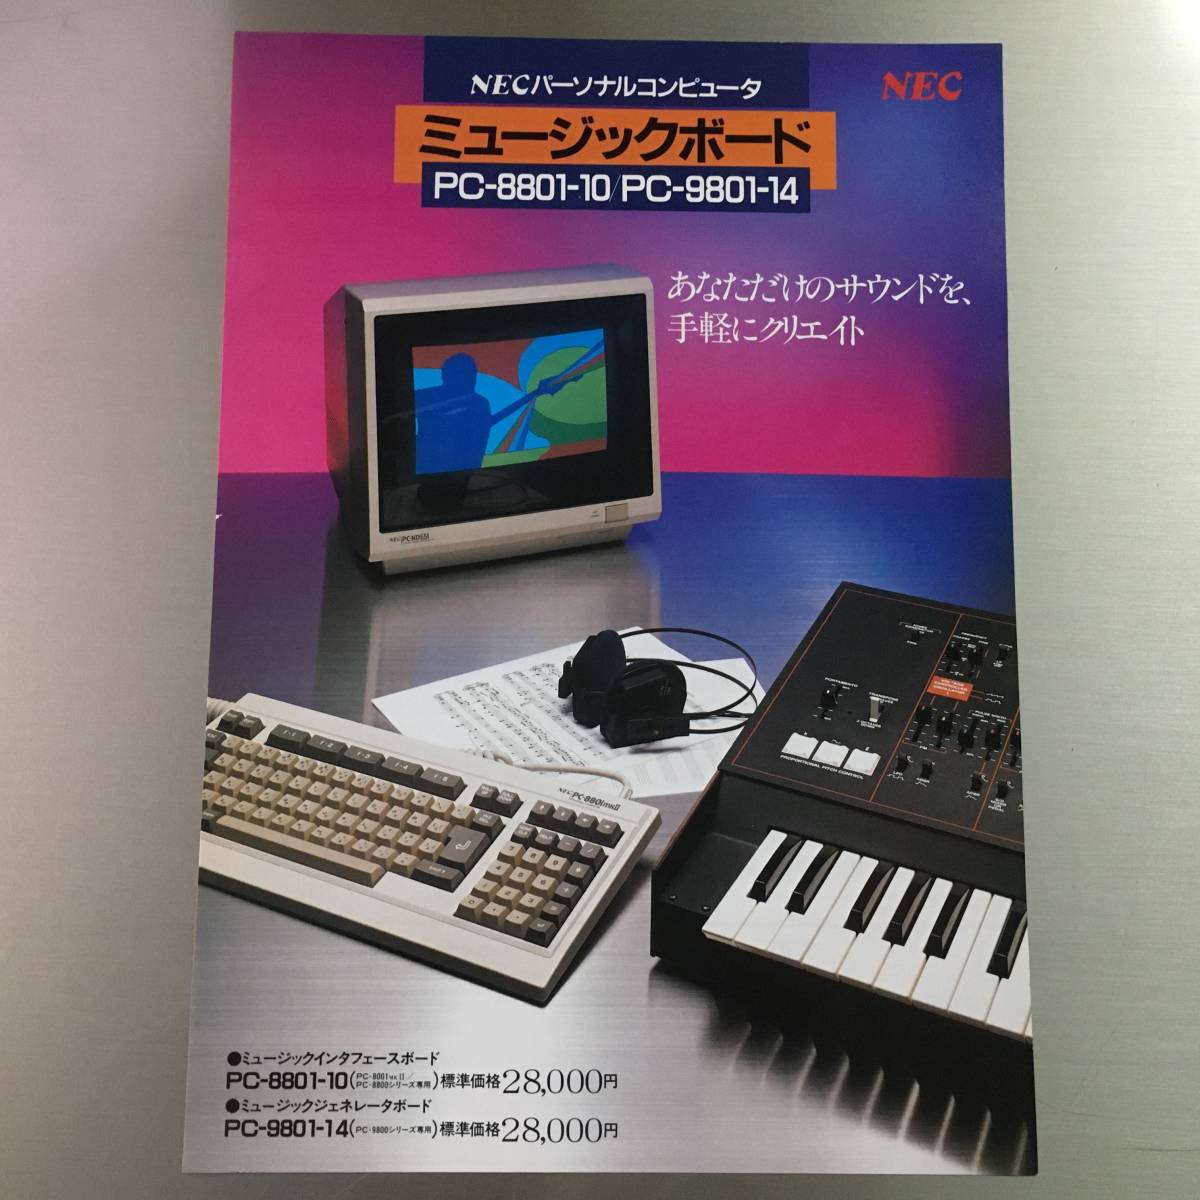  каталог NEC музыка панель PC-8801-10/PC-9801-14